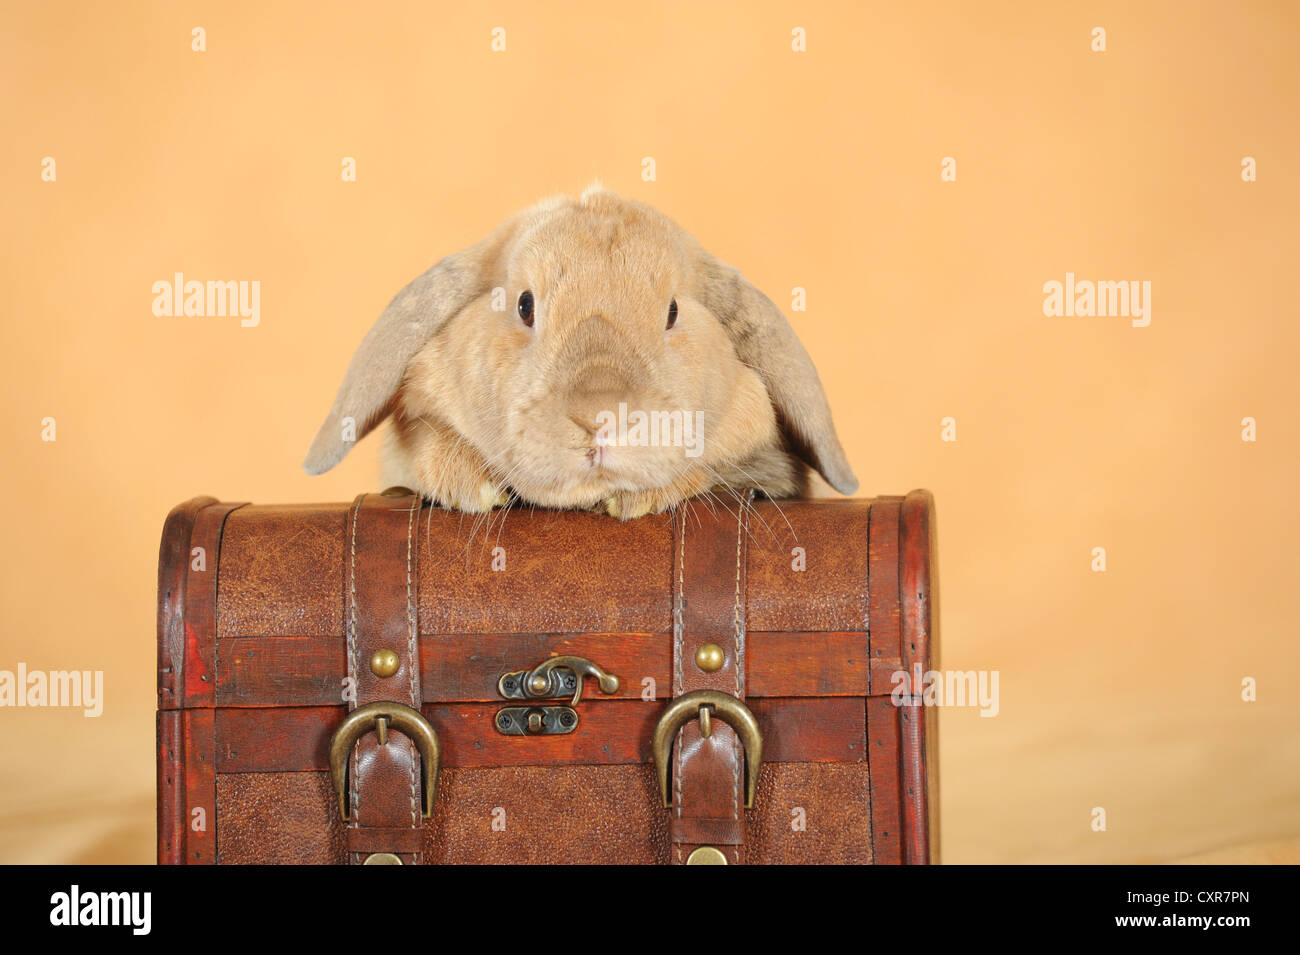 Brauner Zwerg englische Lop Kaninchen stützte sich auf einen Koffer Stockfoto